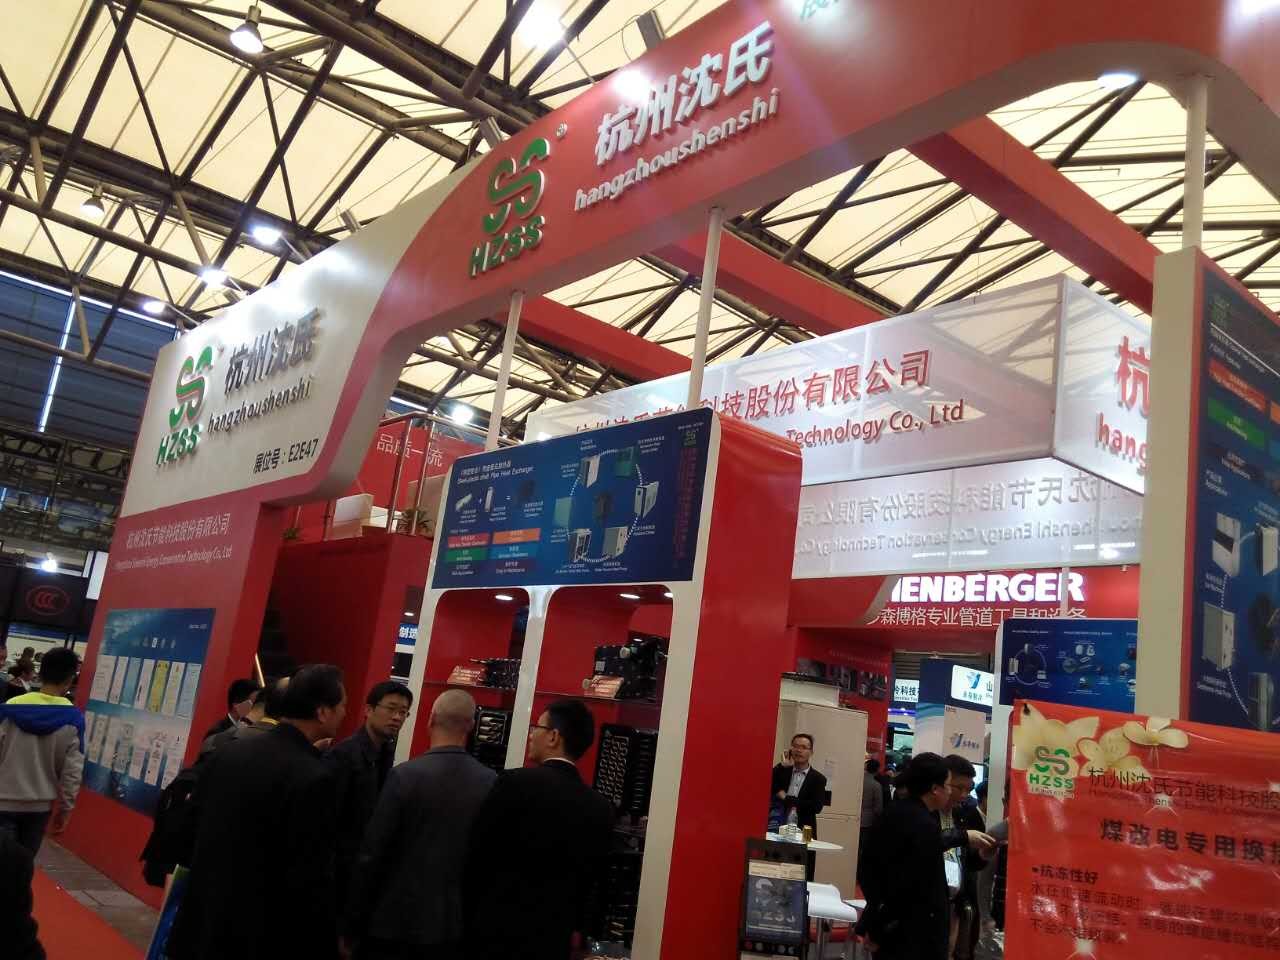 يقع HZSS في CREXPO - Shanghai China في الفترة من 12 إلى 14 أبريل 2017